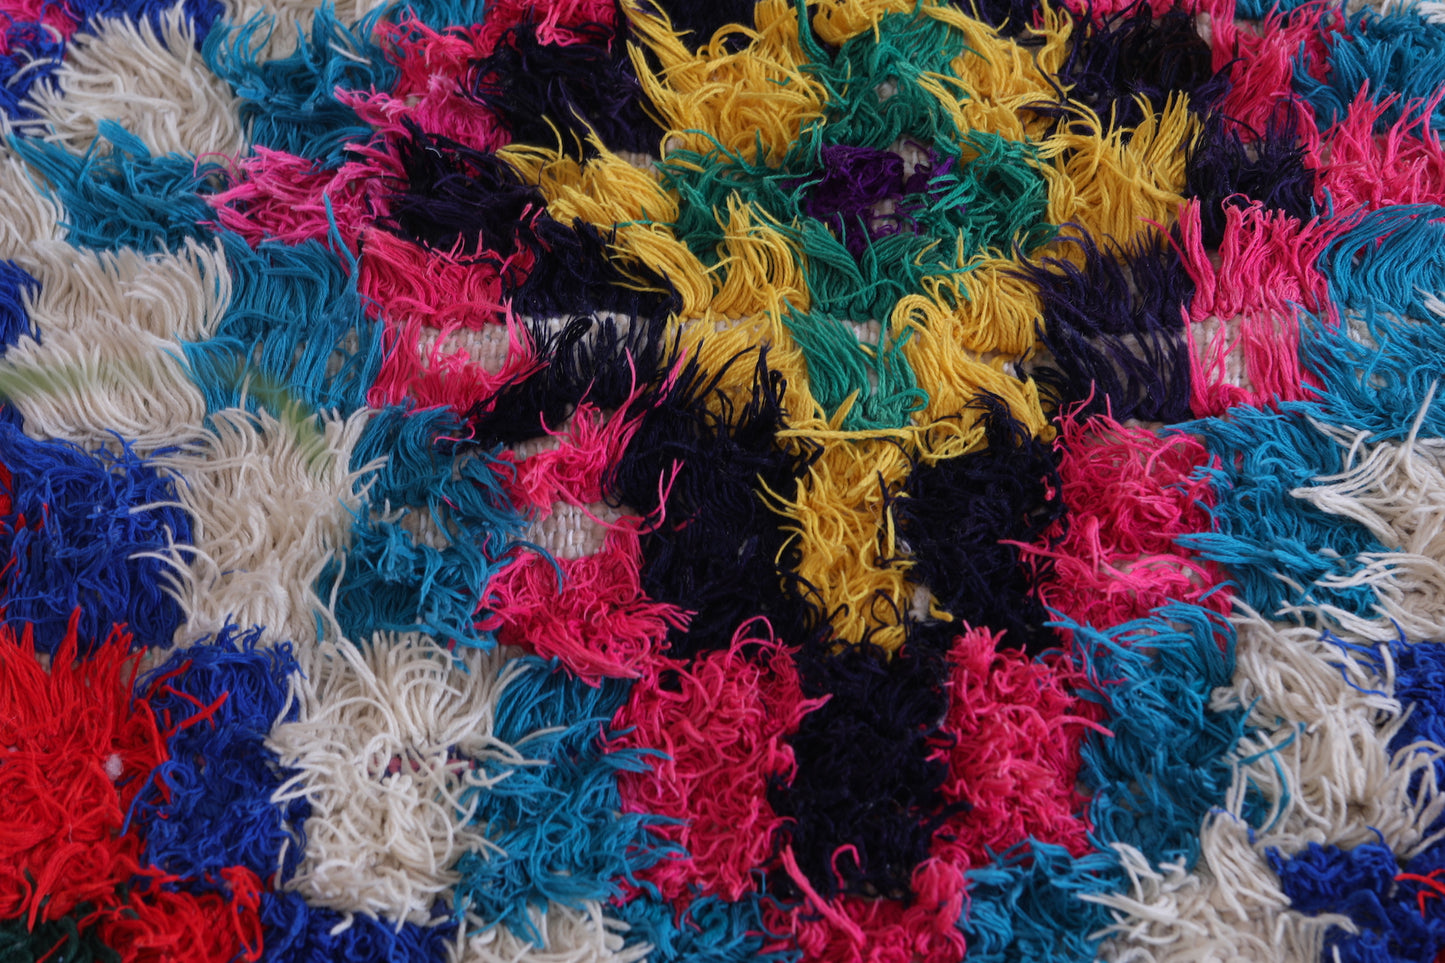 Handwoven boucherouite rug 4 X 5.2 Feet